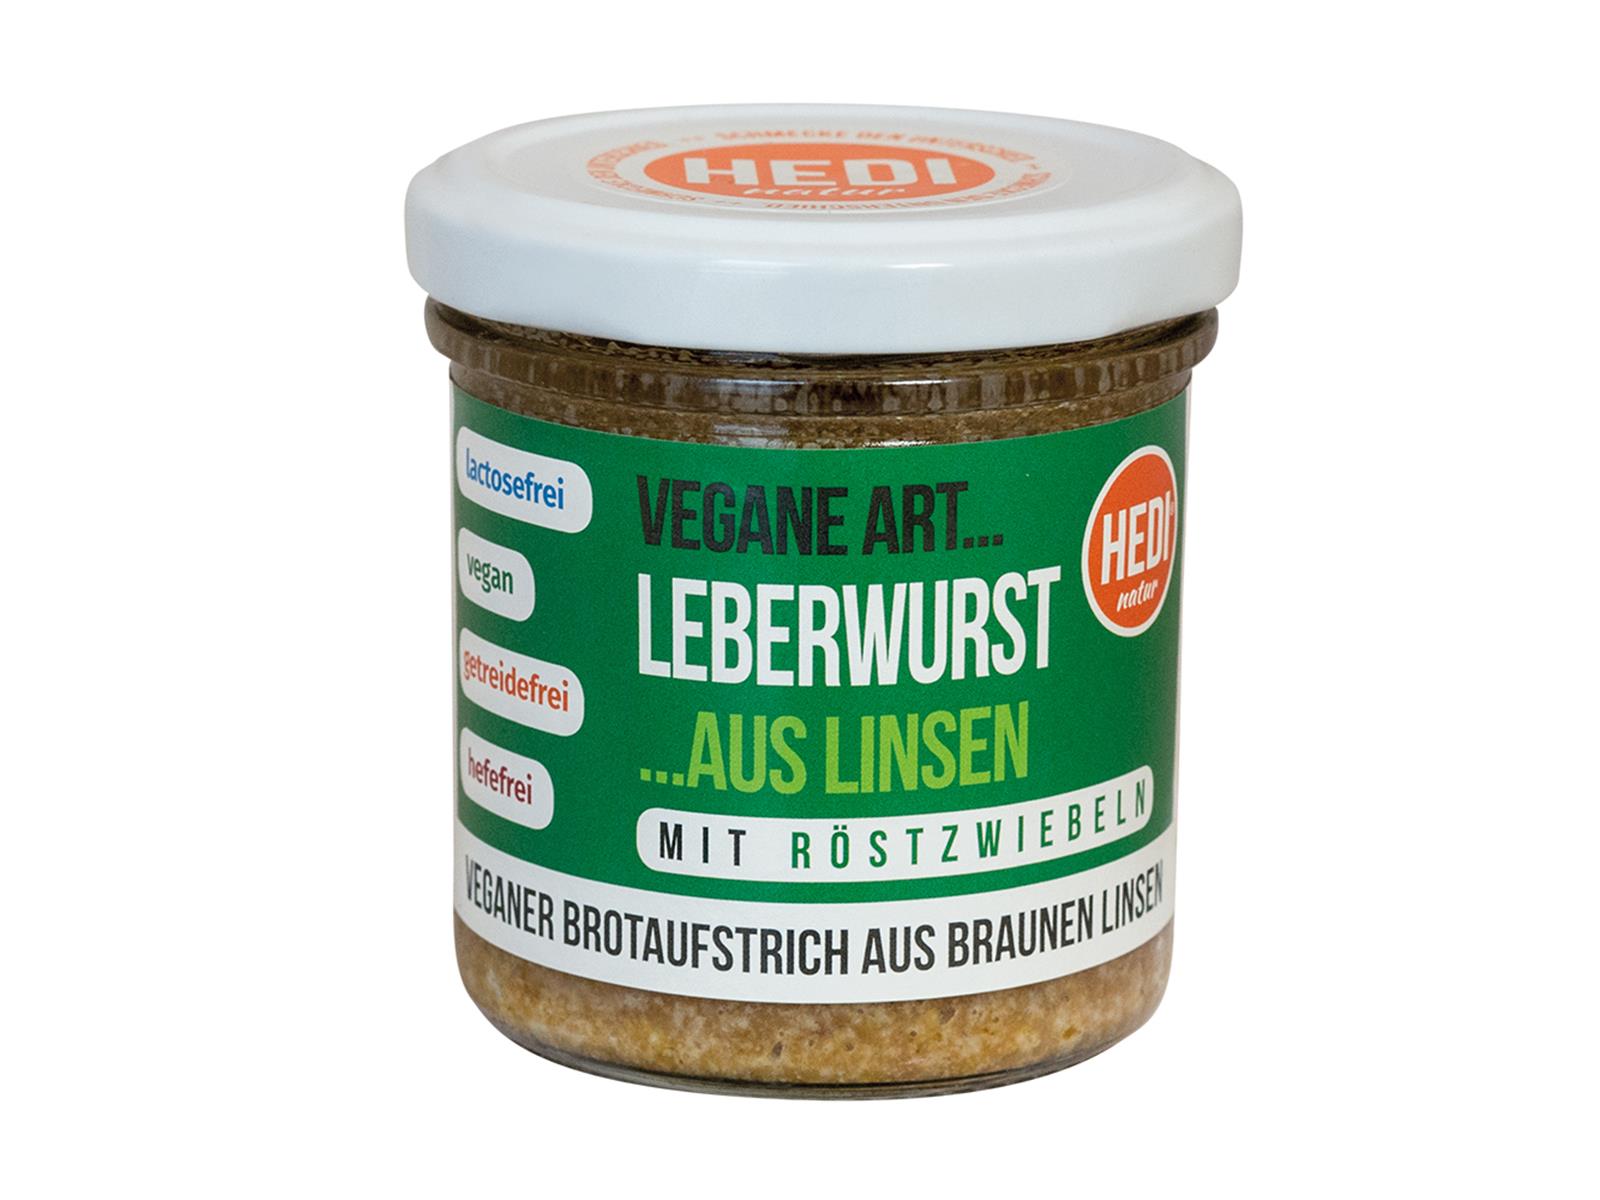 Hedi Leberwurst mit Röstzwiebeln Aufstrich aus Linsen 140g